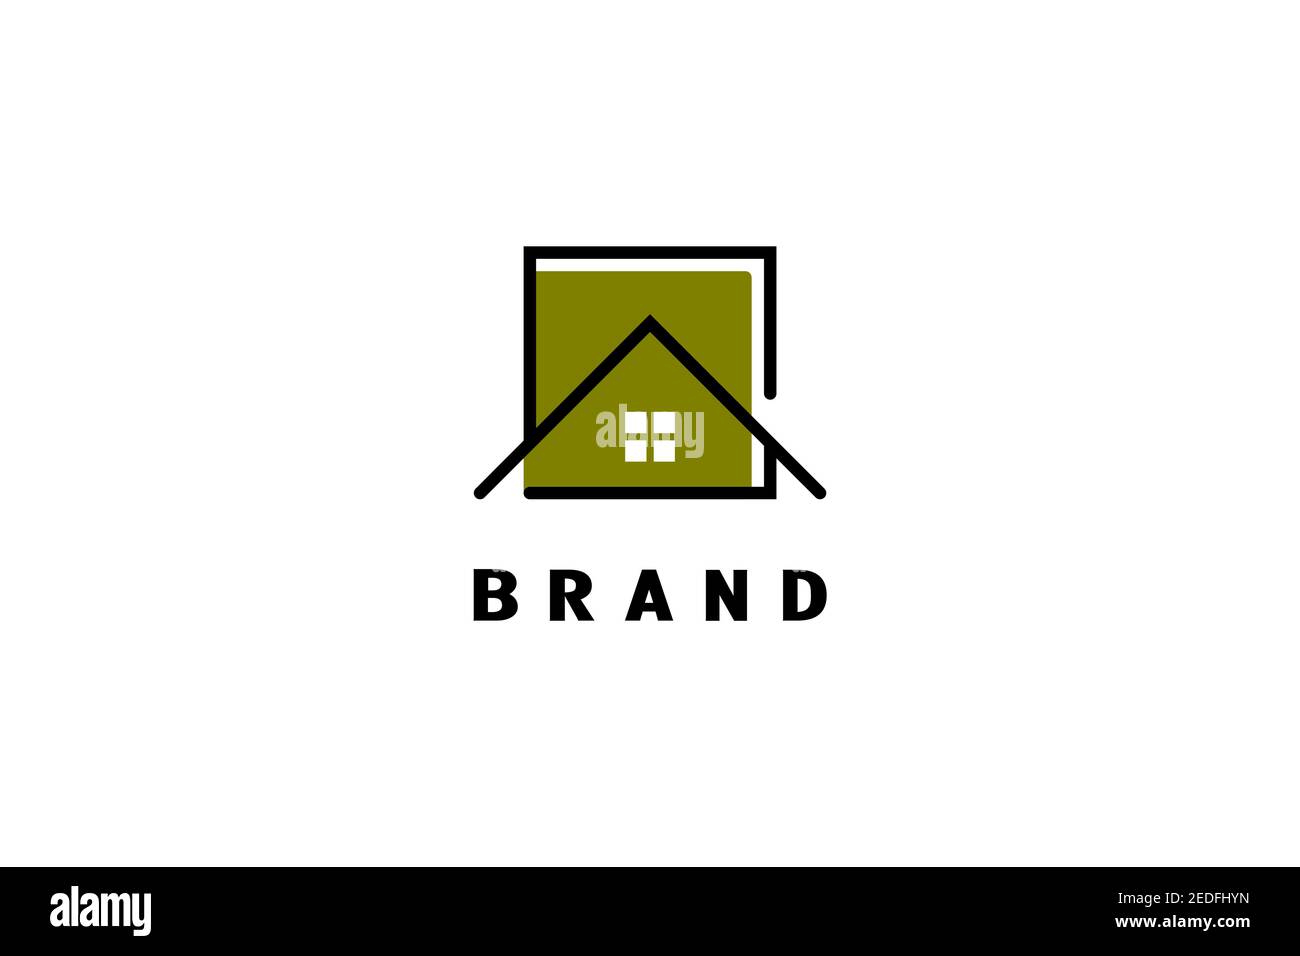 Maison carrée logo, élégant et minimaliste, adapté pour la construction logo, affaires immobilières, immobilier, ou maison en bois logo. Illustration de Vecteur